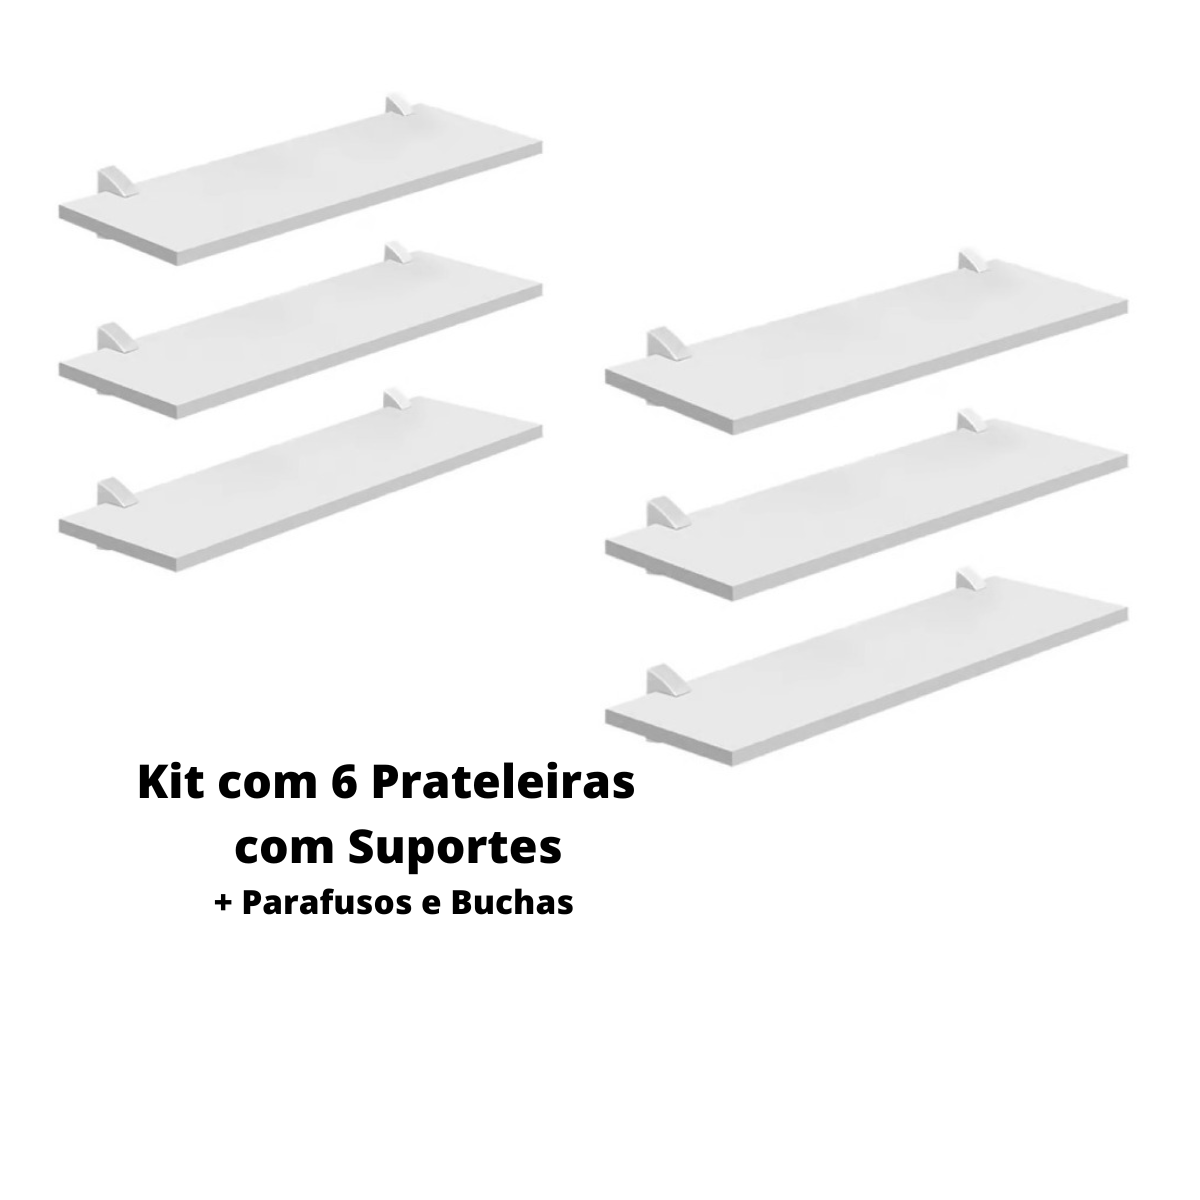 Kit com 6 Prateleiras Mdp Bcas 20x28 com Suportes D-core - 1